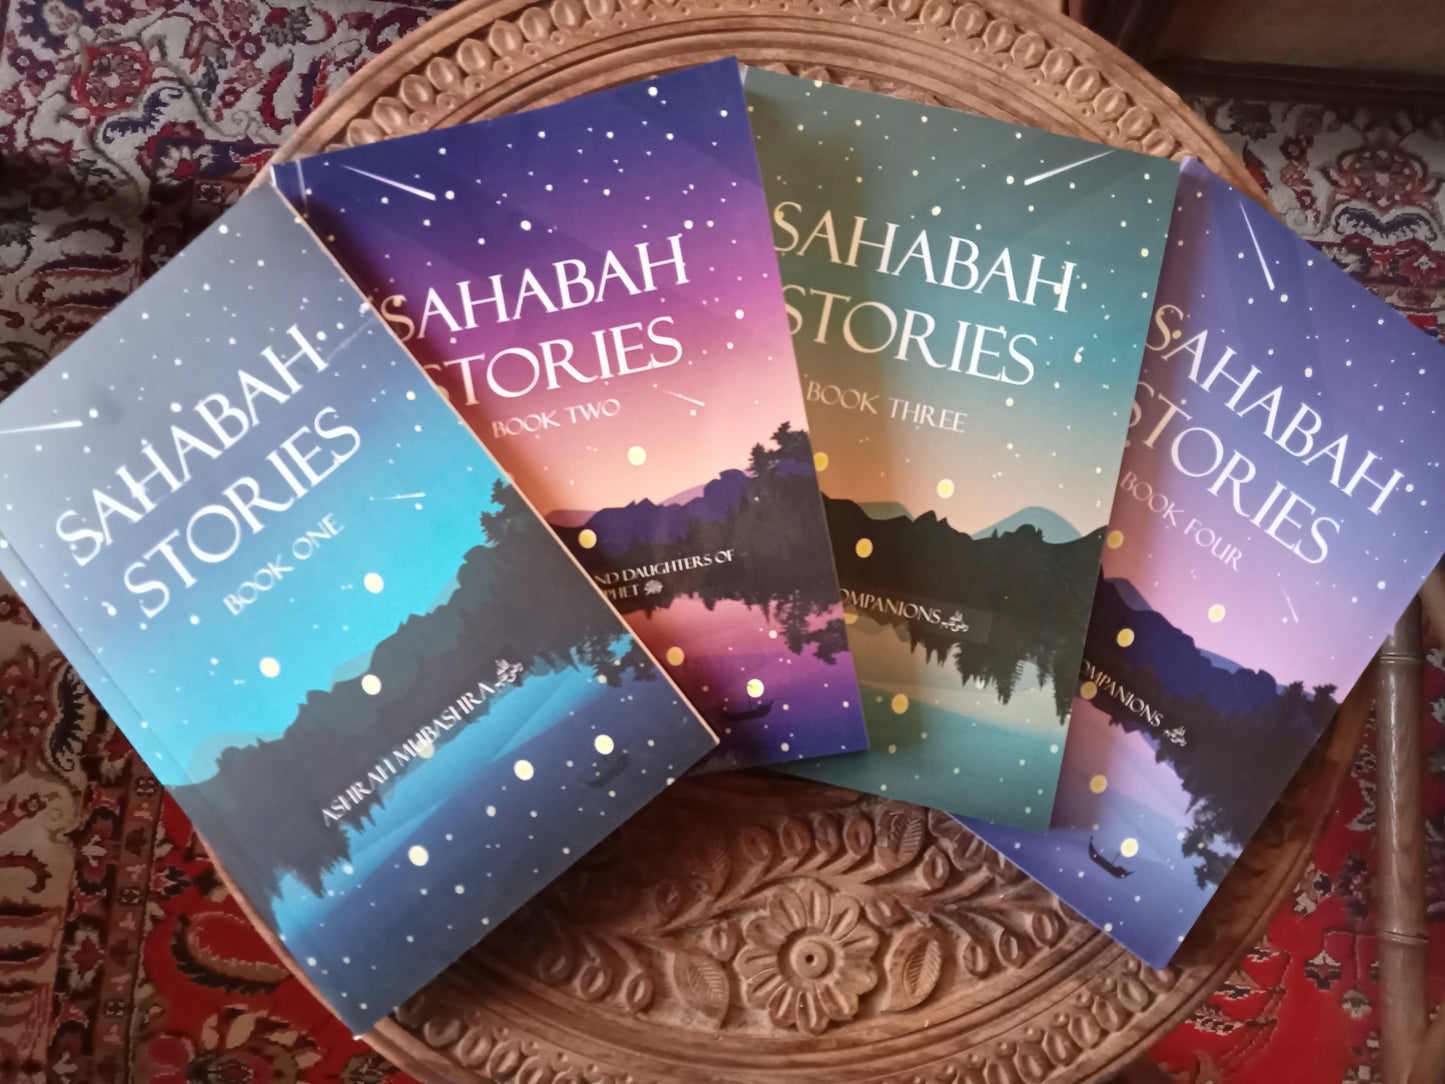 Sahabah Stories